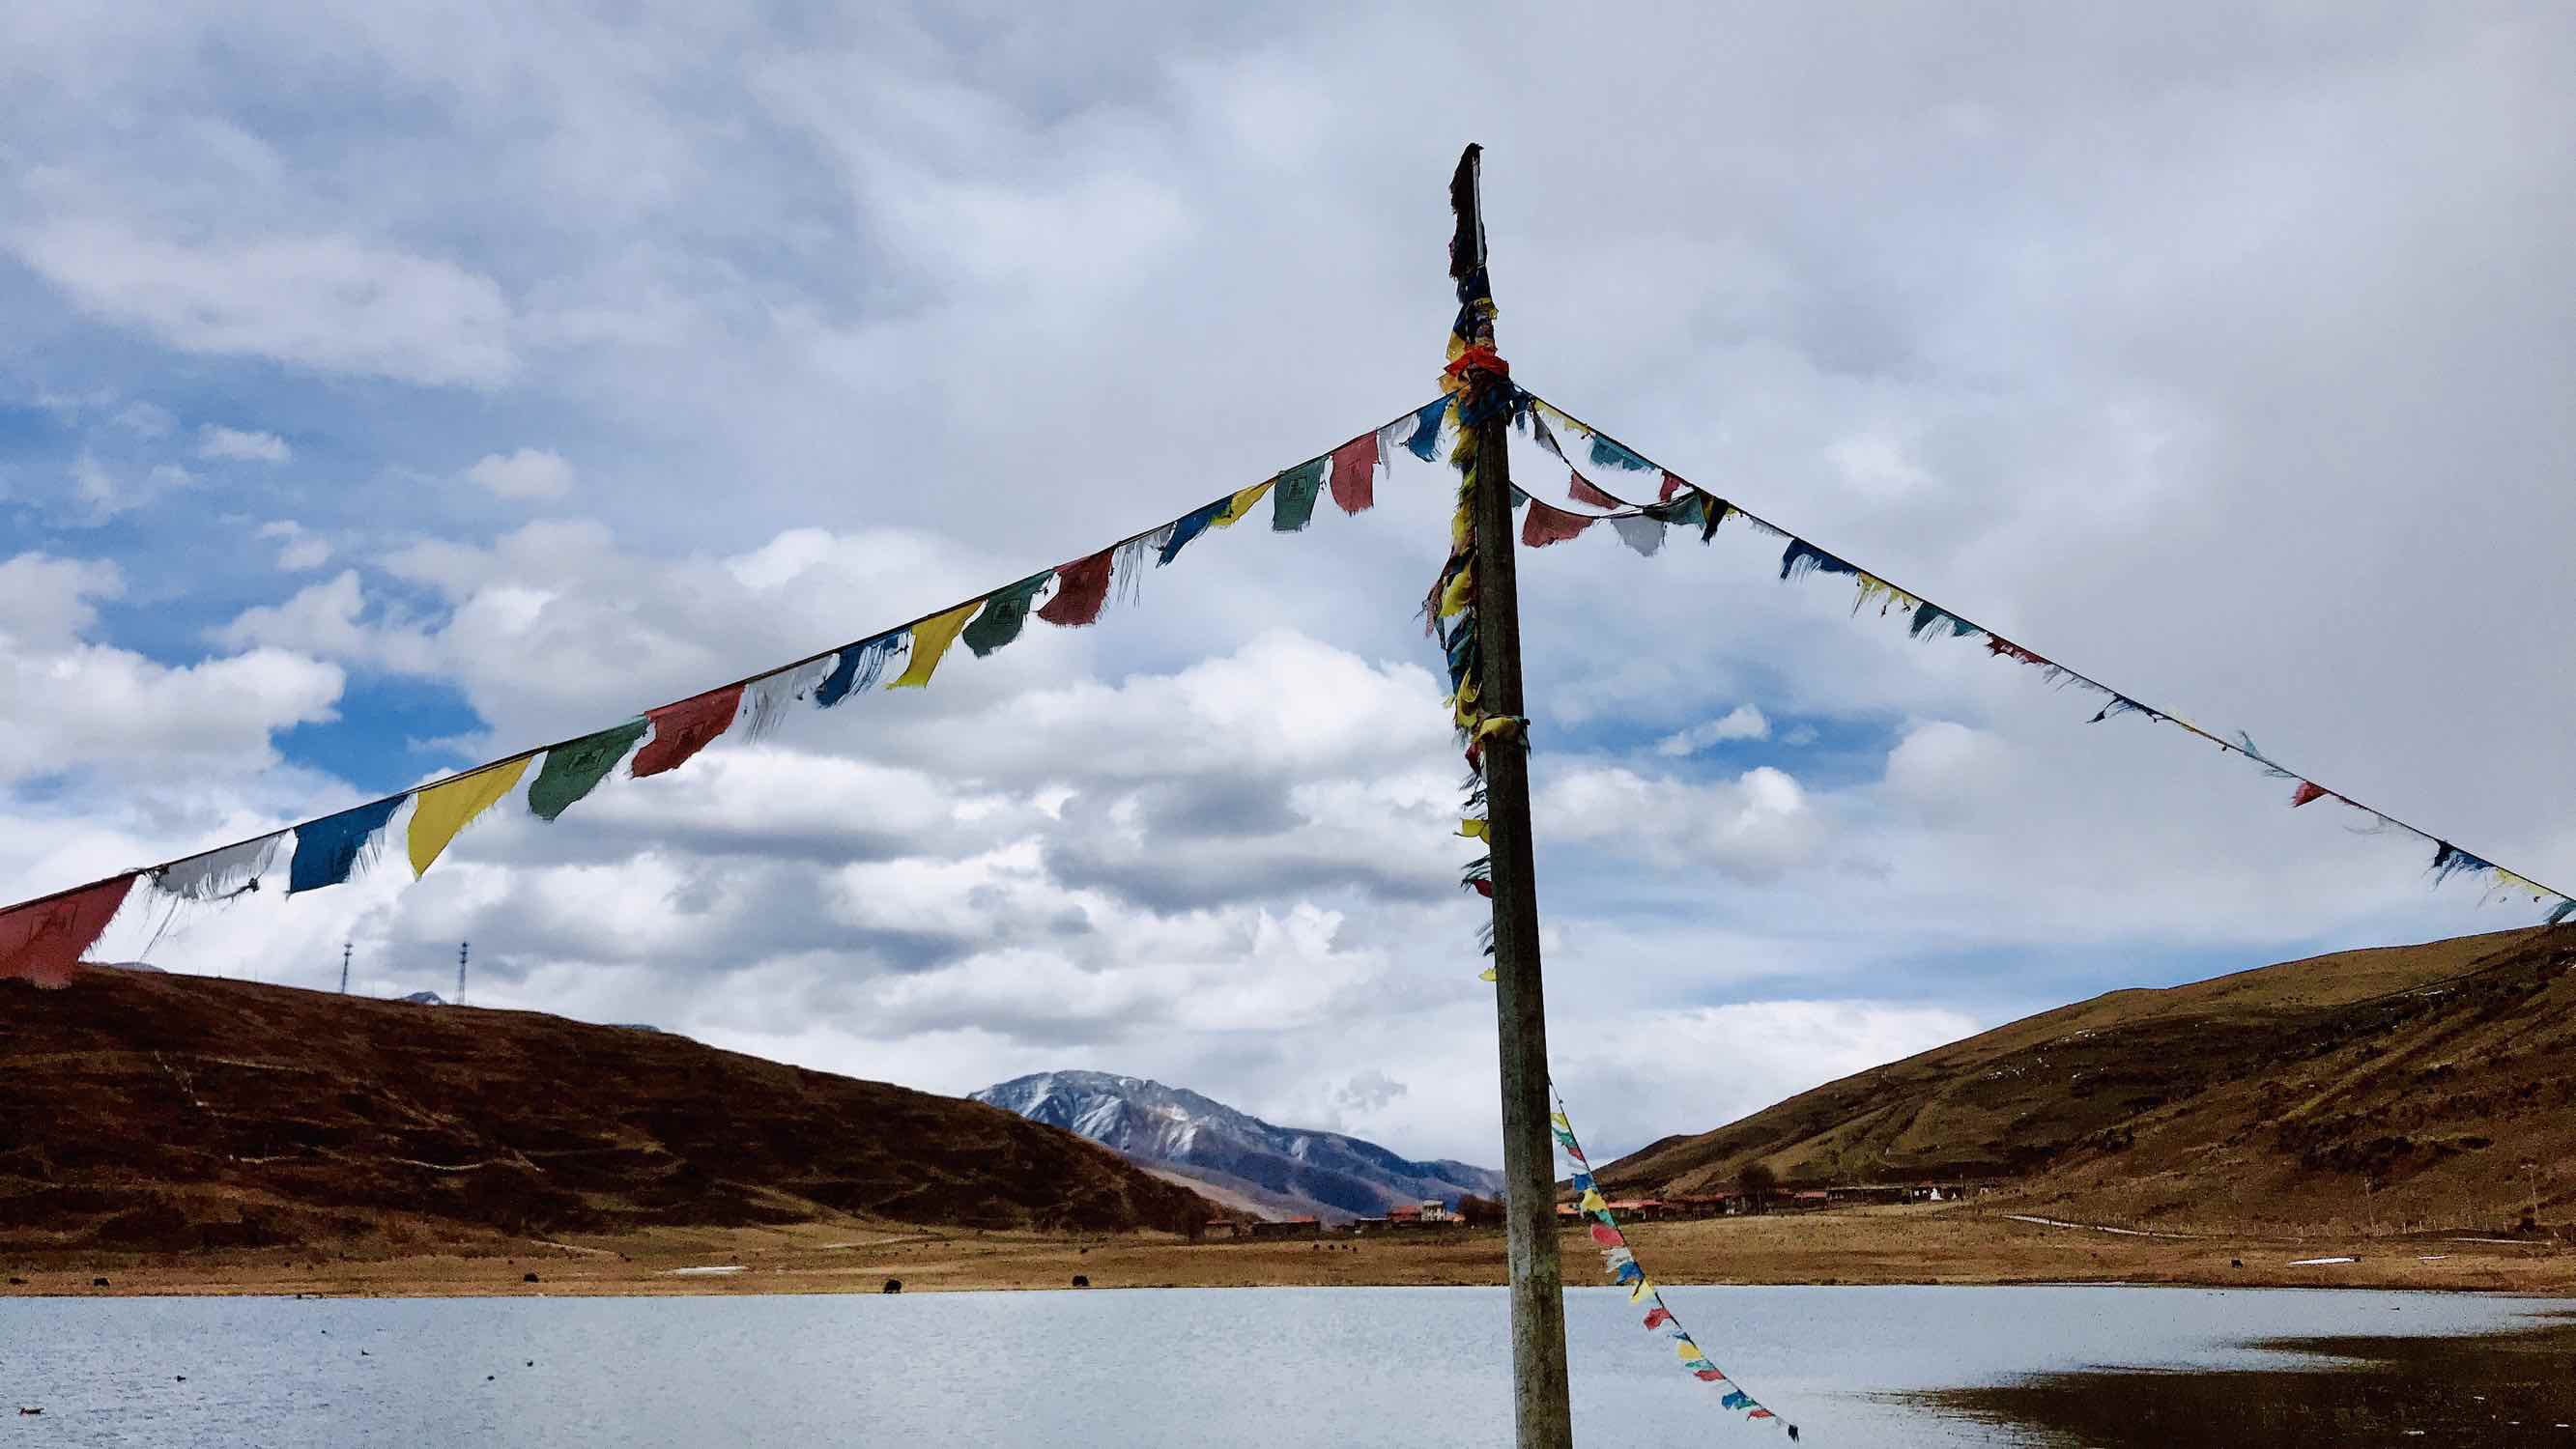 摄影瞬间,想你了,西藏,一个人的旅行